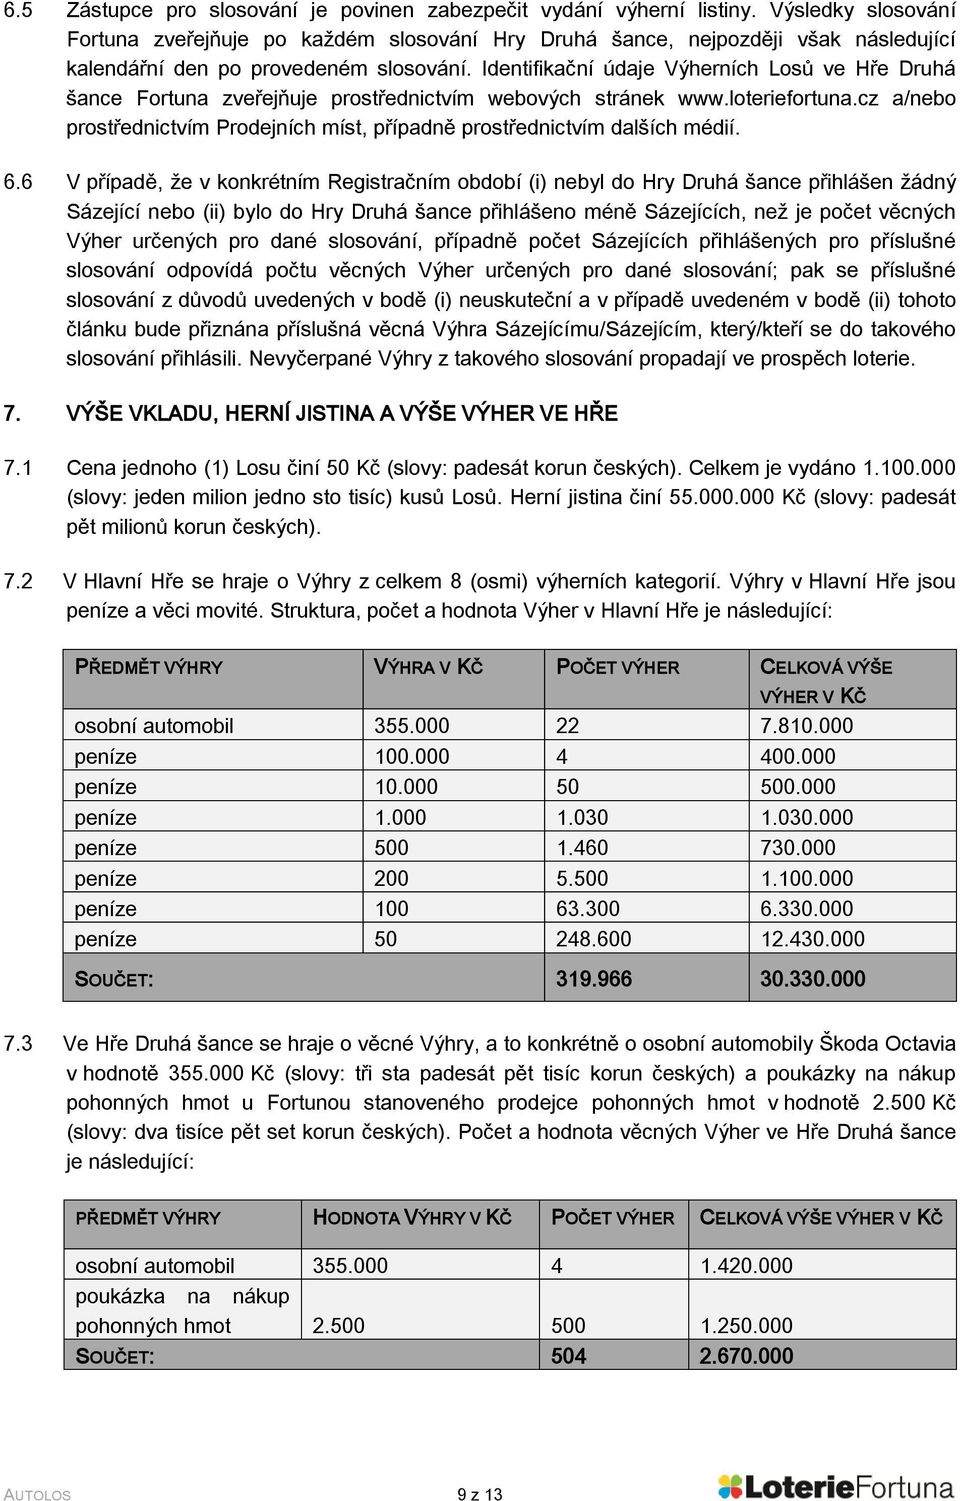 Identifikační údaje Výherních Losů ve Hře Druhá šance Fortuna zveřejňuje prostřednictvím webových stránek www.loteriefortuna.